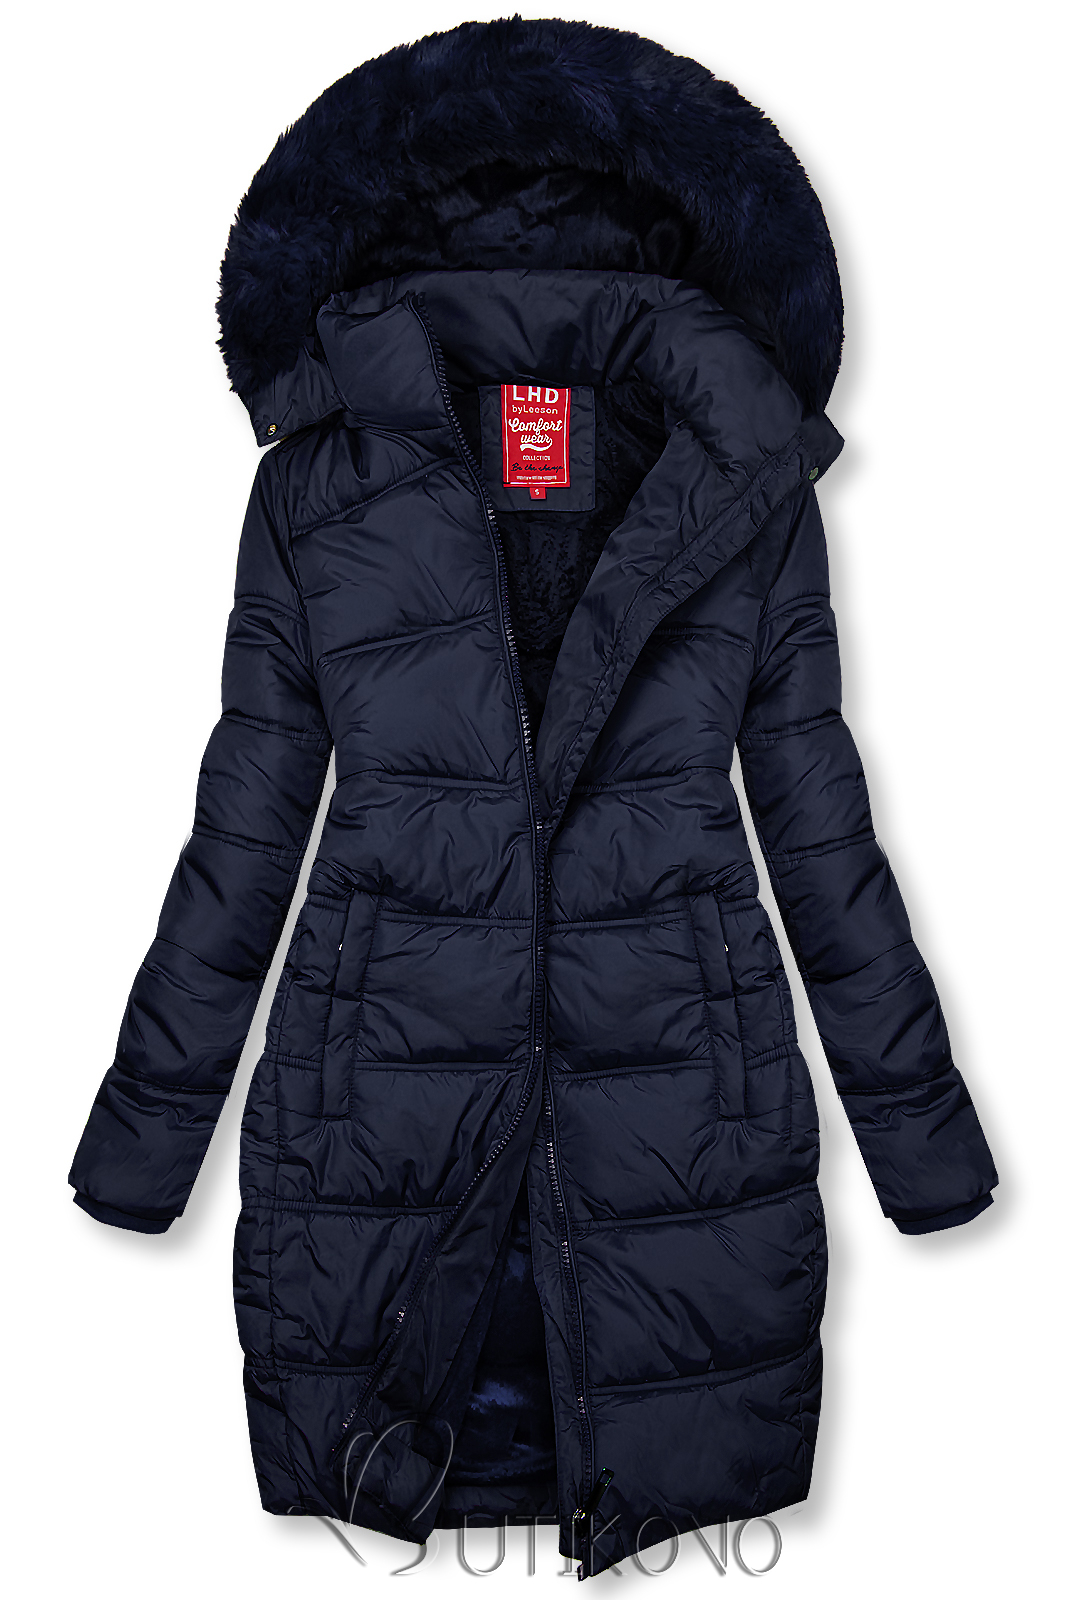 Tmavomodrá zimná bunda v prešívanom dizajne